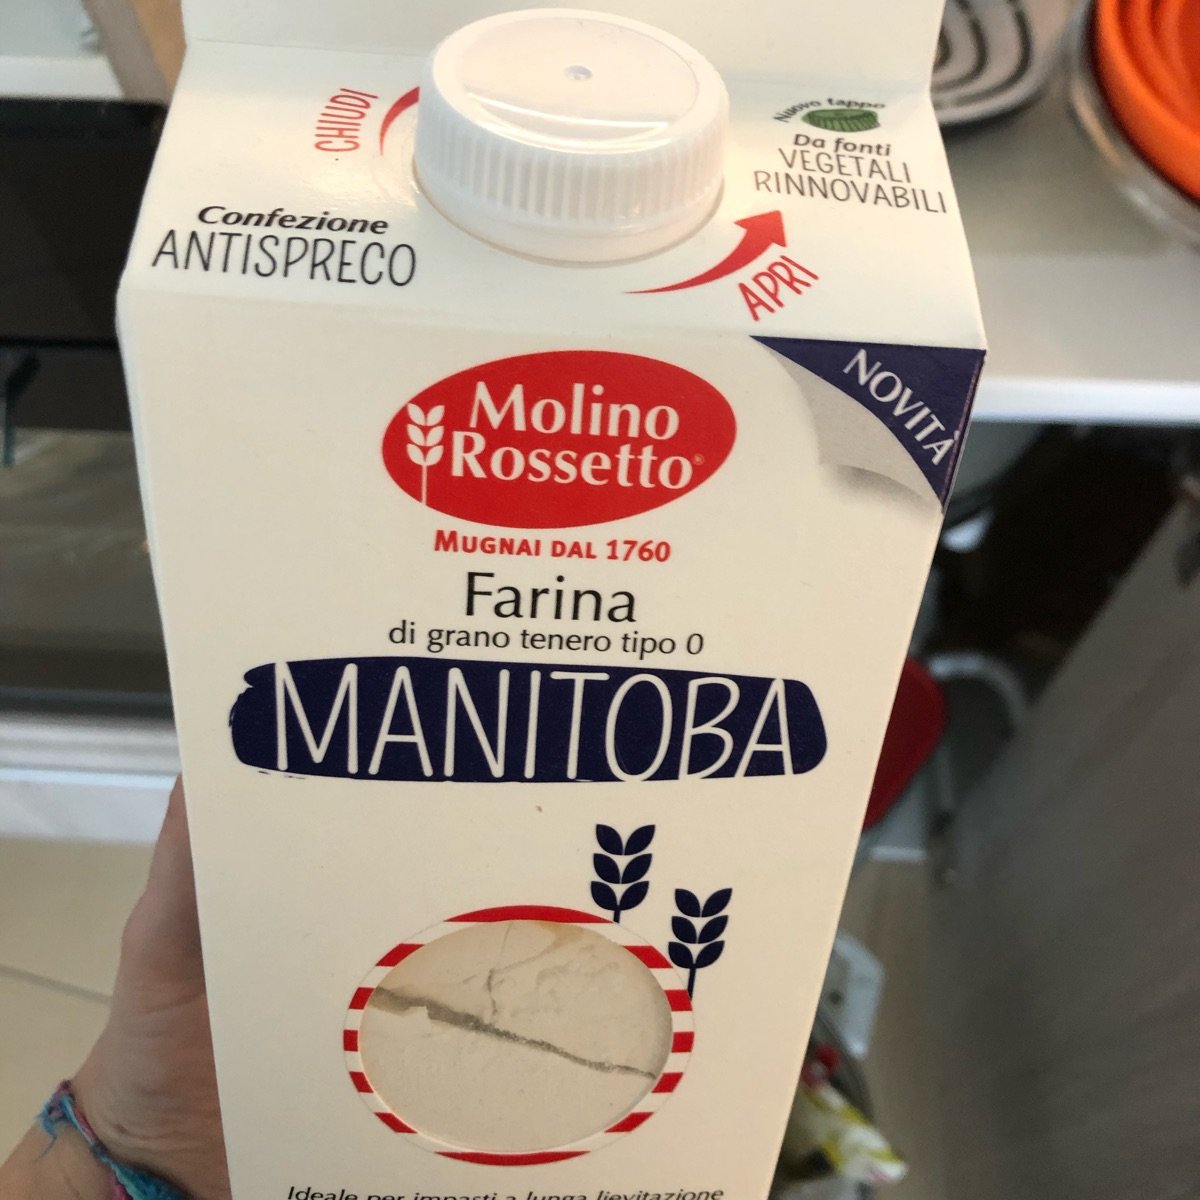 Molino Rossetto Farina Manitoba Reviews | abillion